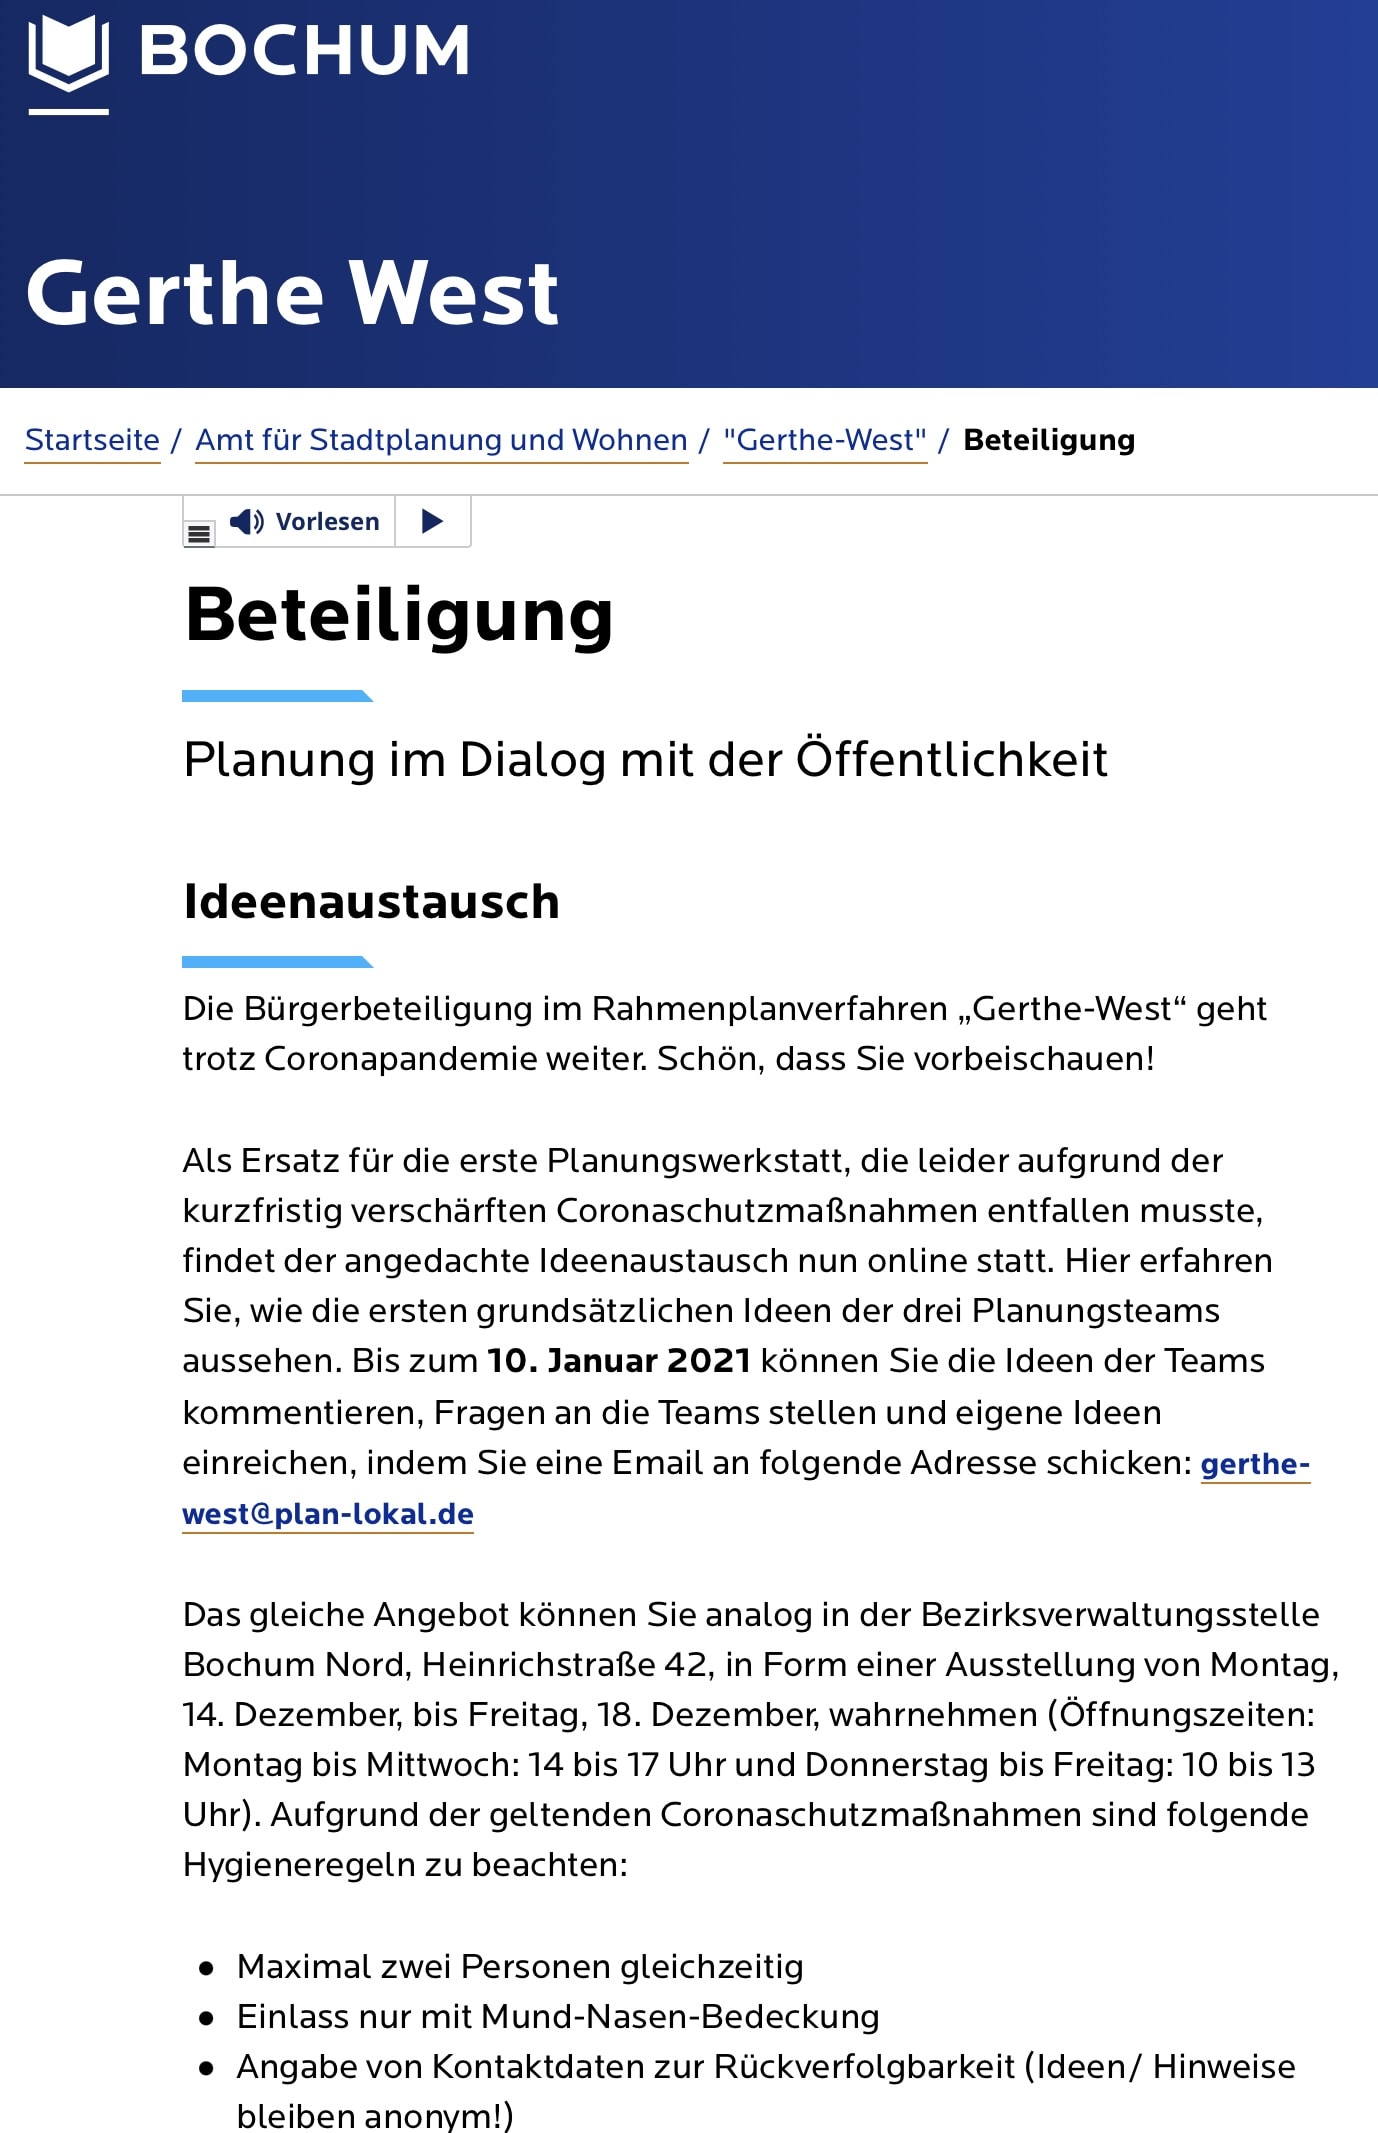 Gerthe West Beteiligung (www.bochum.de)